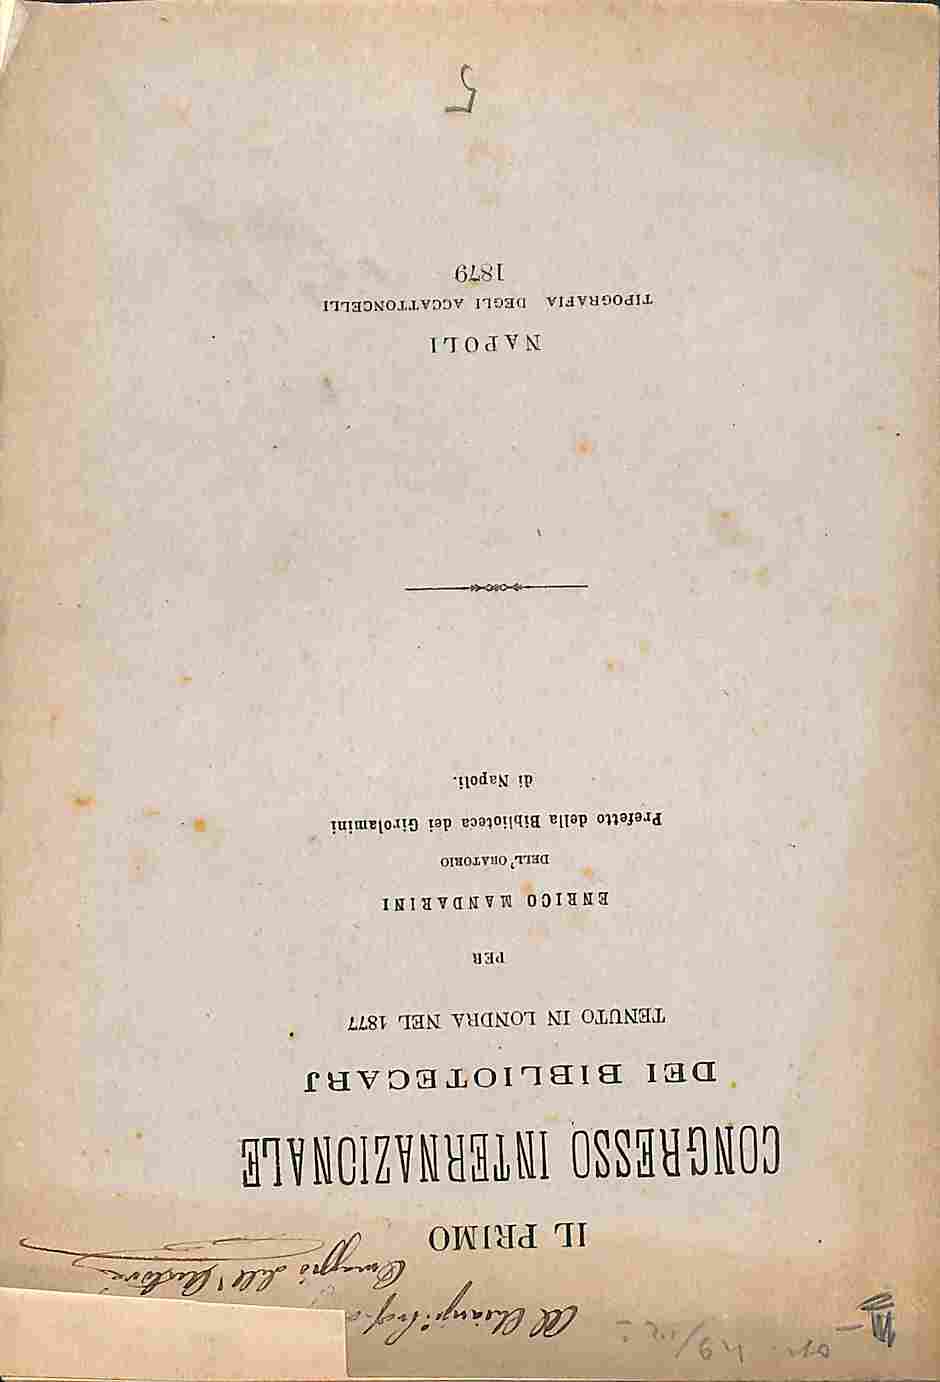 Il primo congresso internazionale dei bibliotecarj tenuto in Londra nel 1877